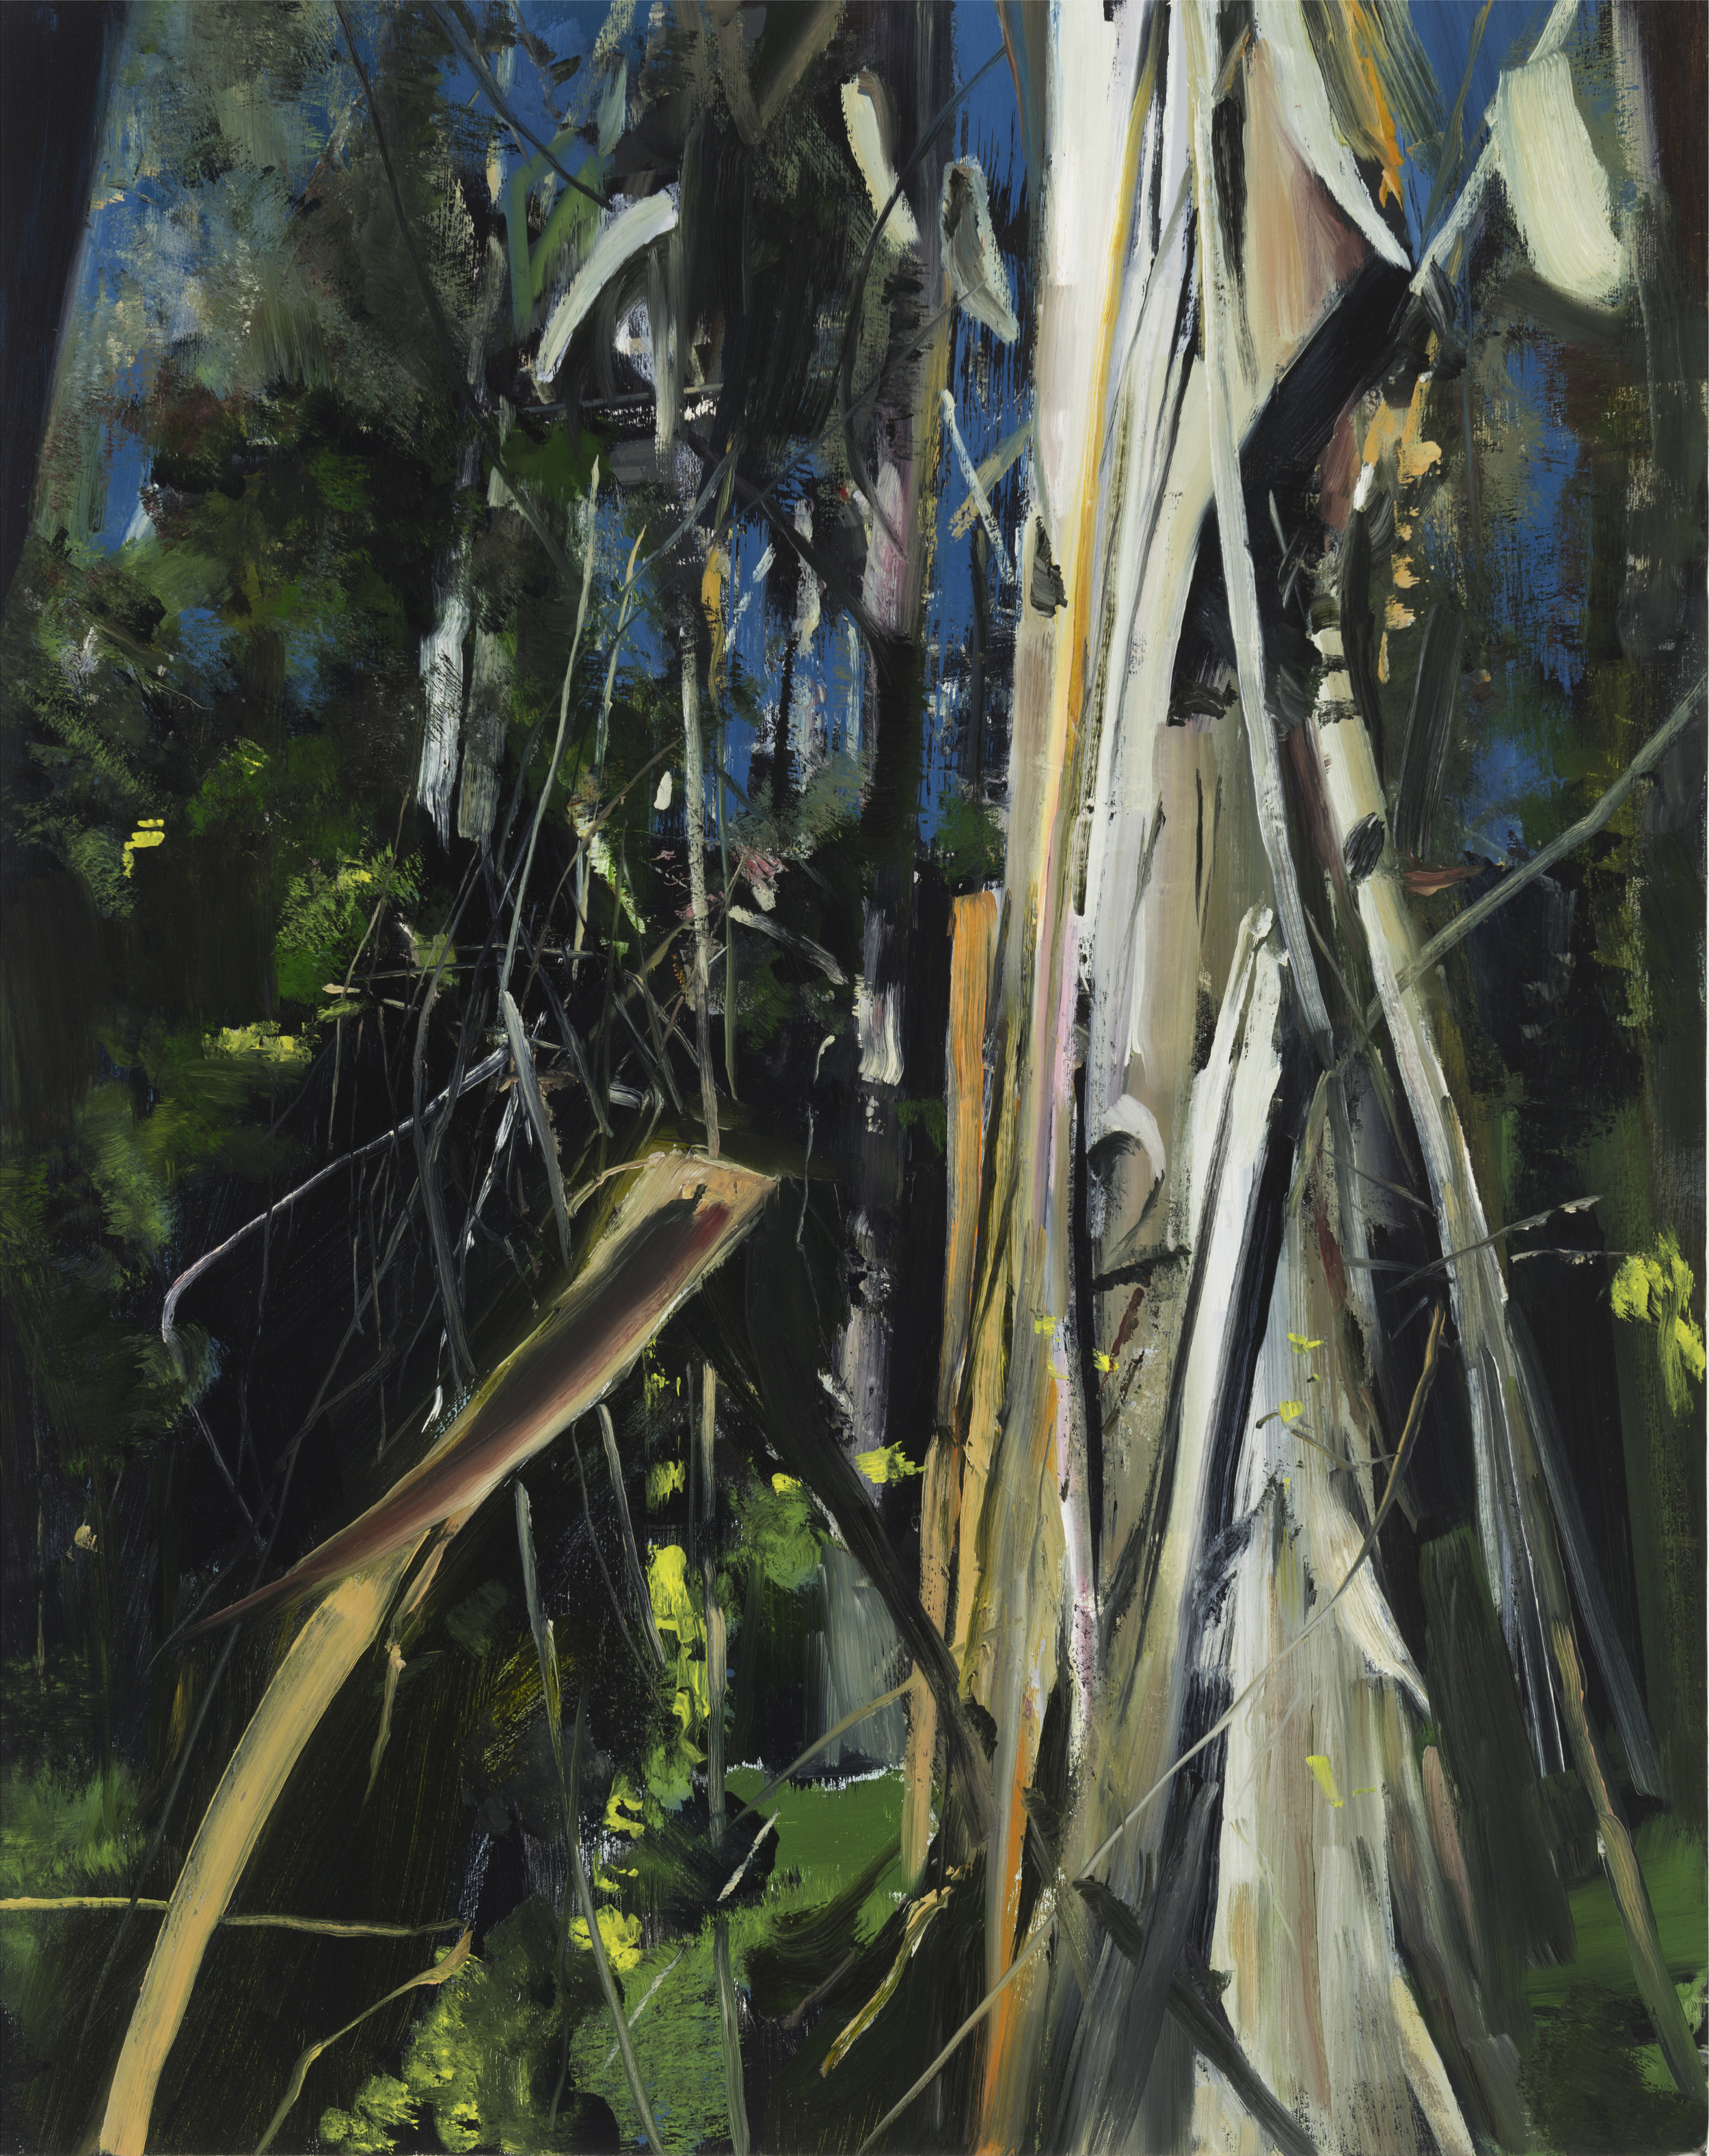   palomarin (eucalyptus)&nbsp;&nbsp; •  30" x 24"  oil on canvas  2014    